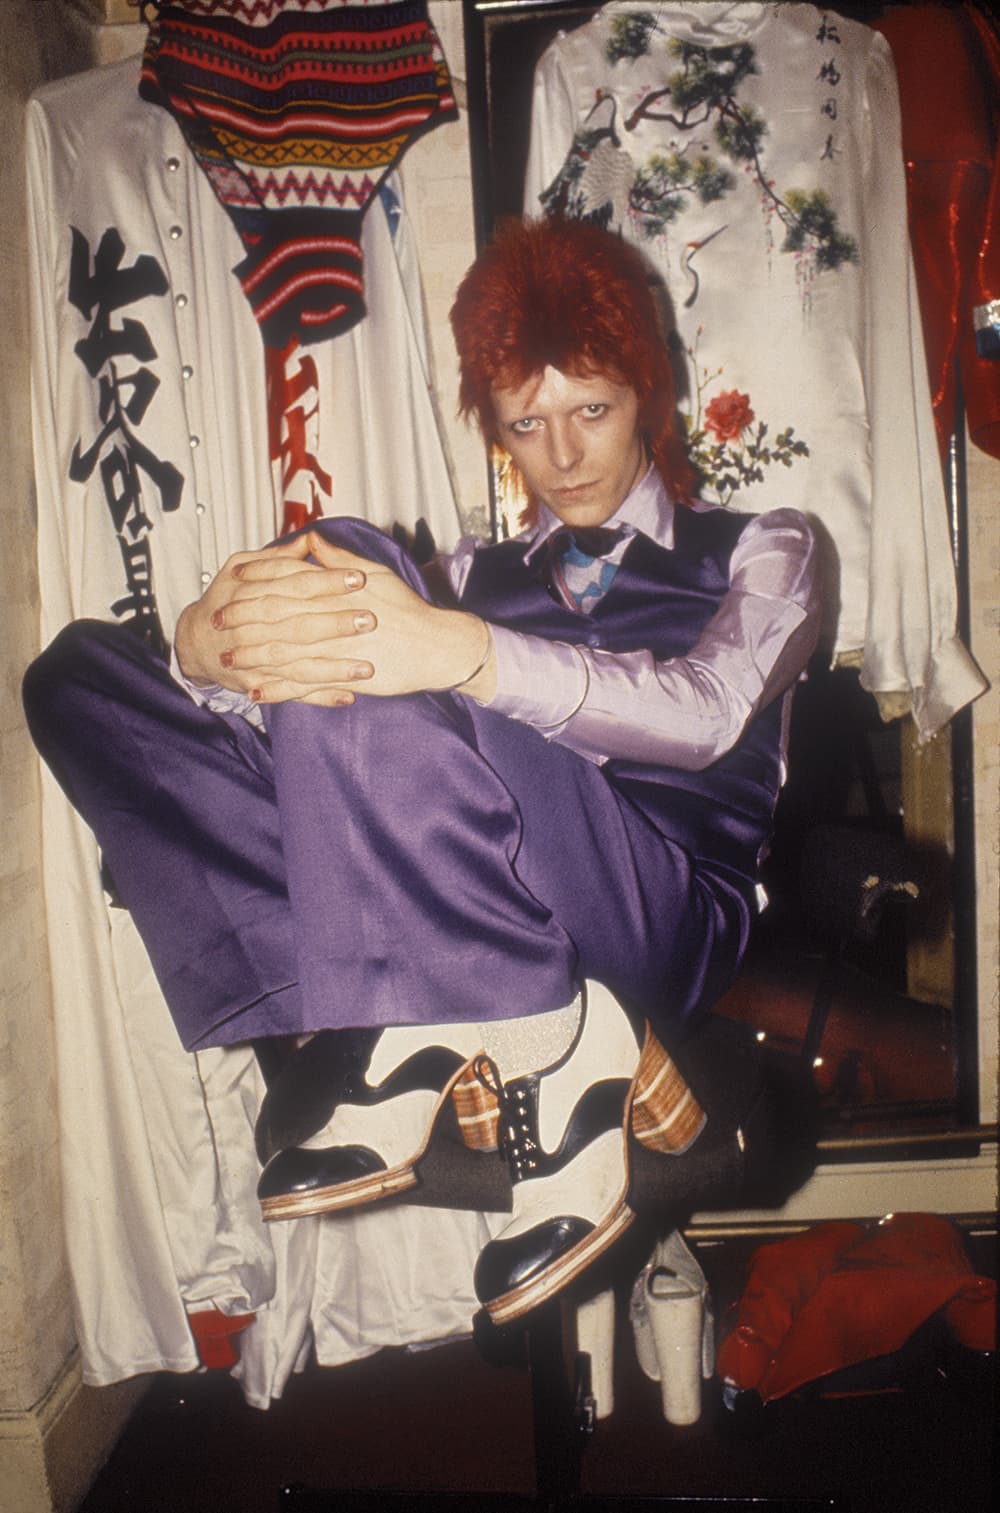 David Bowie Summer tour 1973 Mick Rock